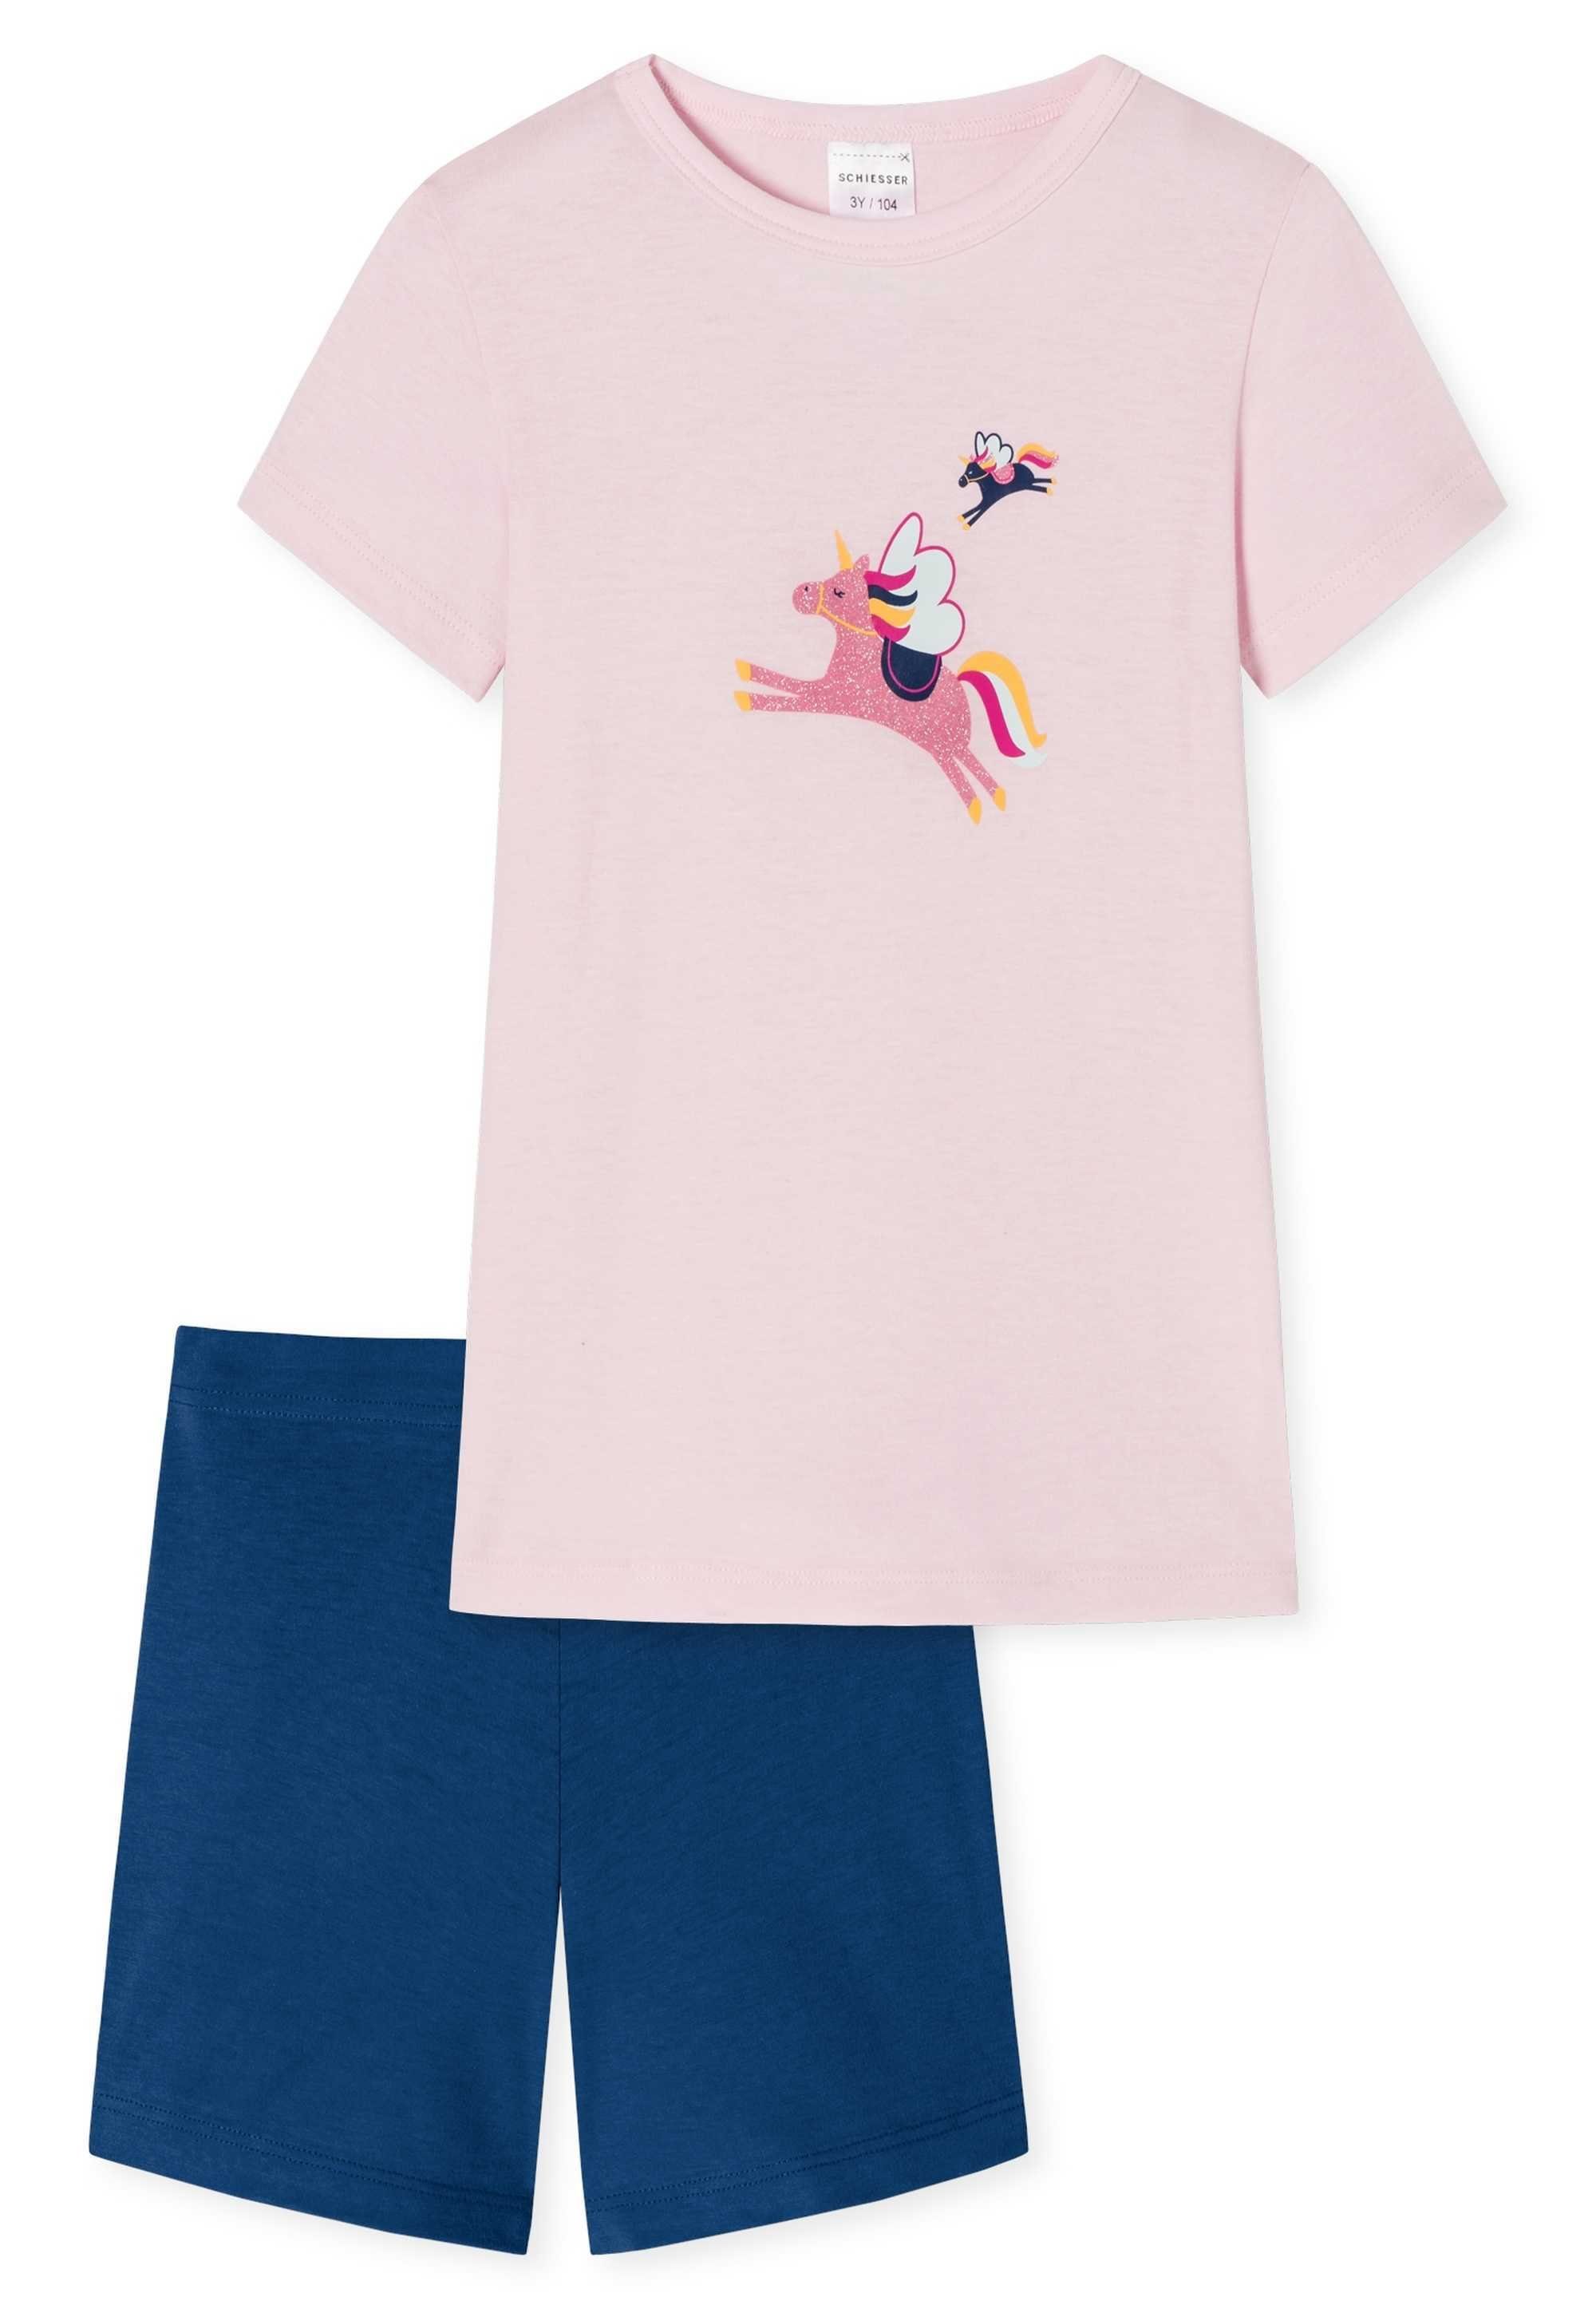 Schiesser Pyjama Mädchen Rosa/Dunkelblau - Schlafanzug Kinder kurzarm